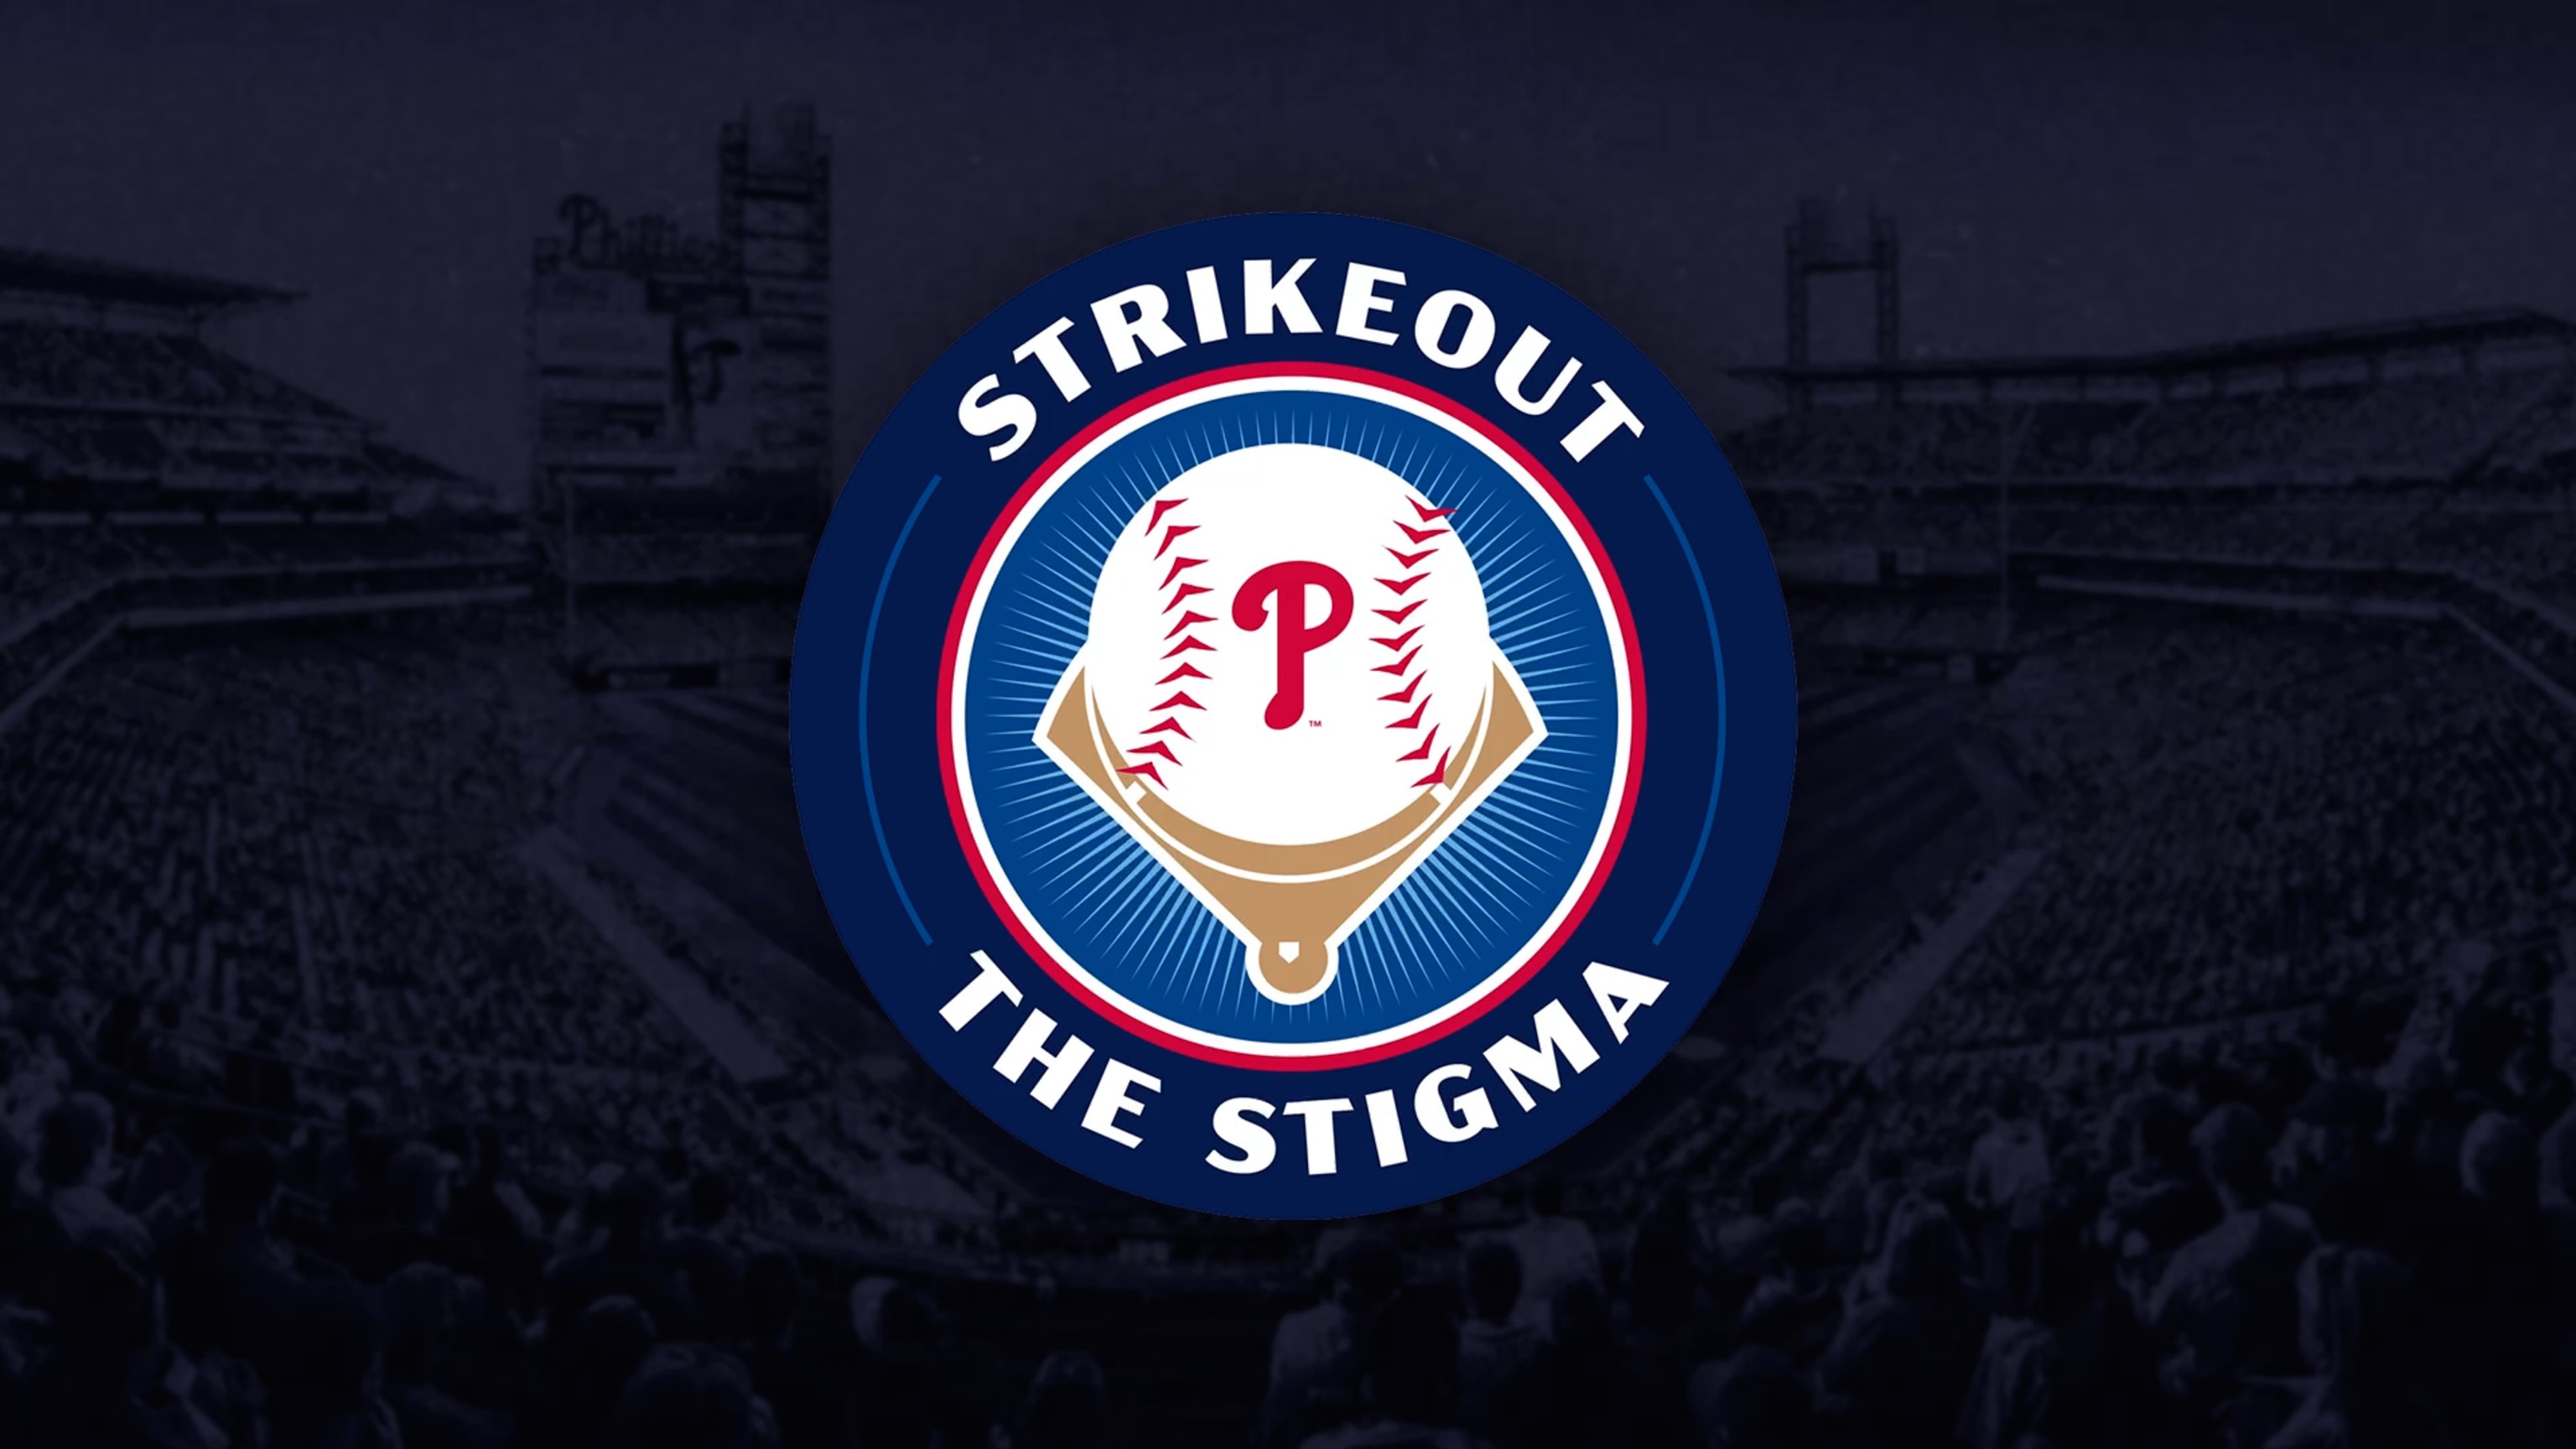 Strike Out the Stigma Philadelphia Phillies